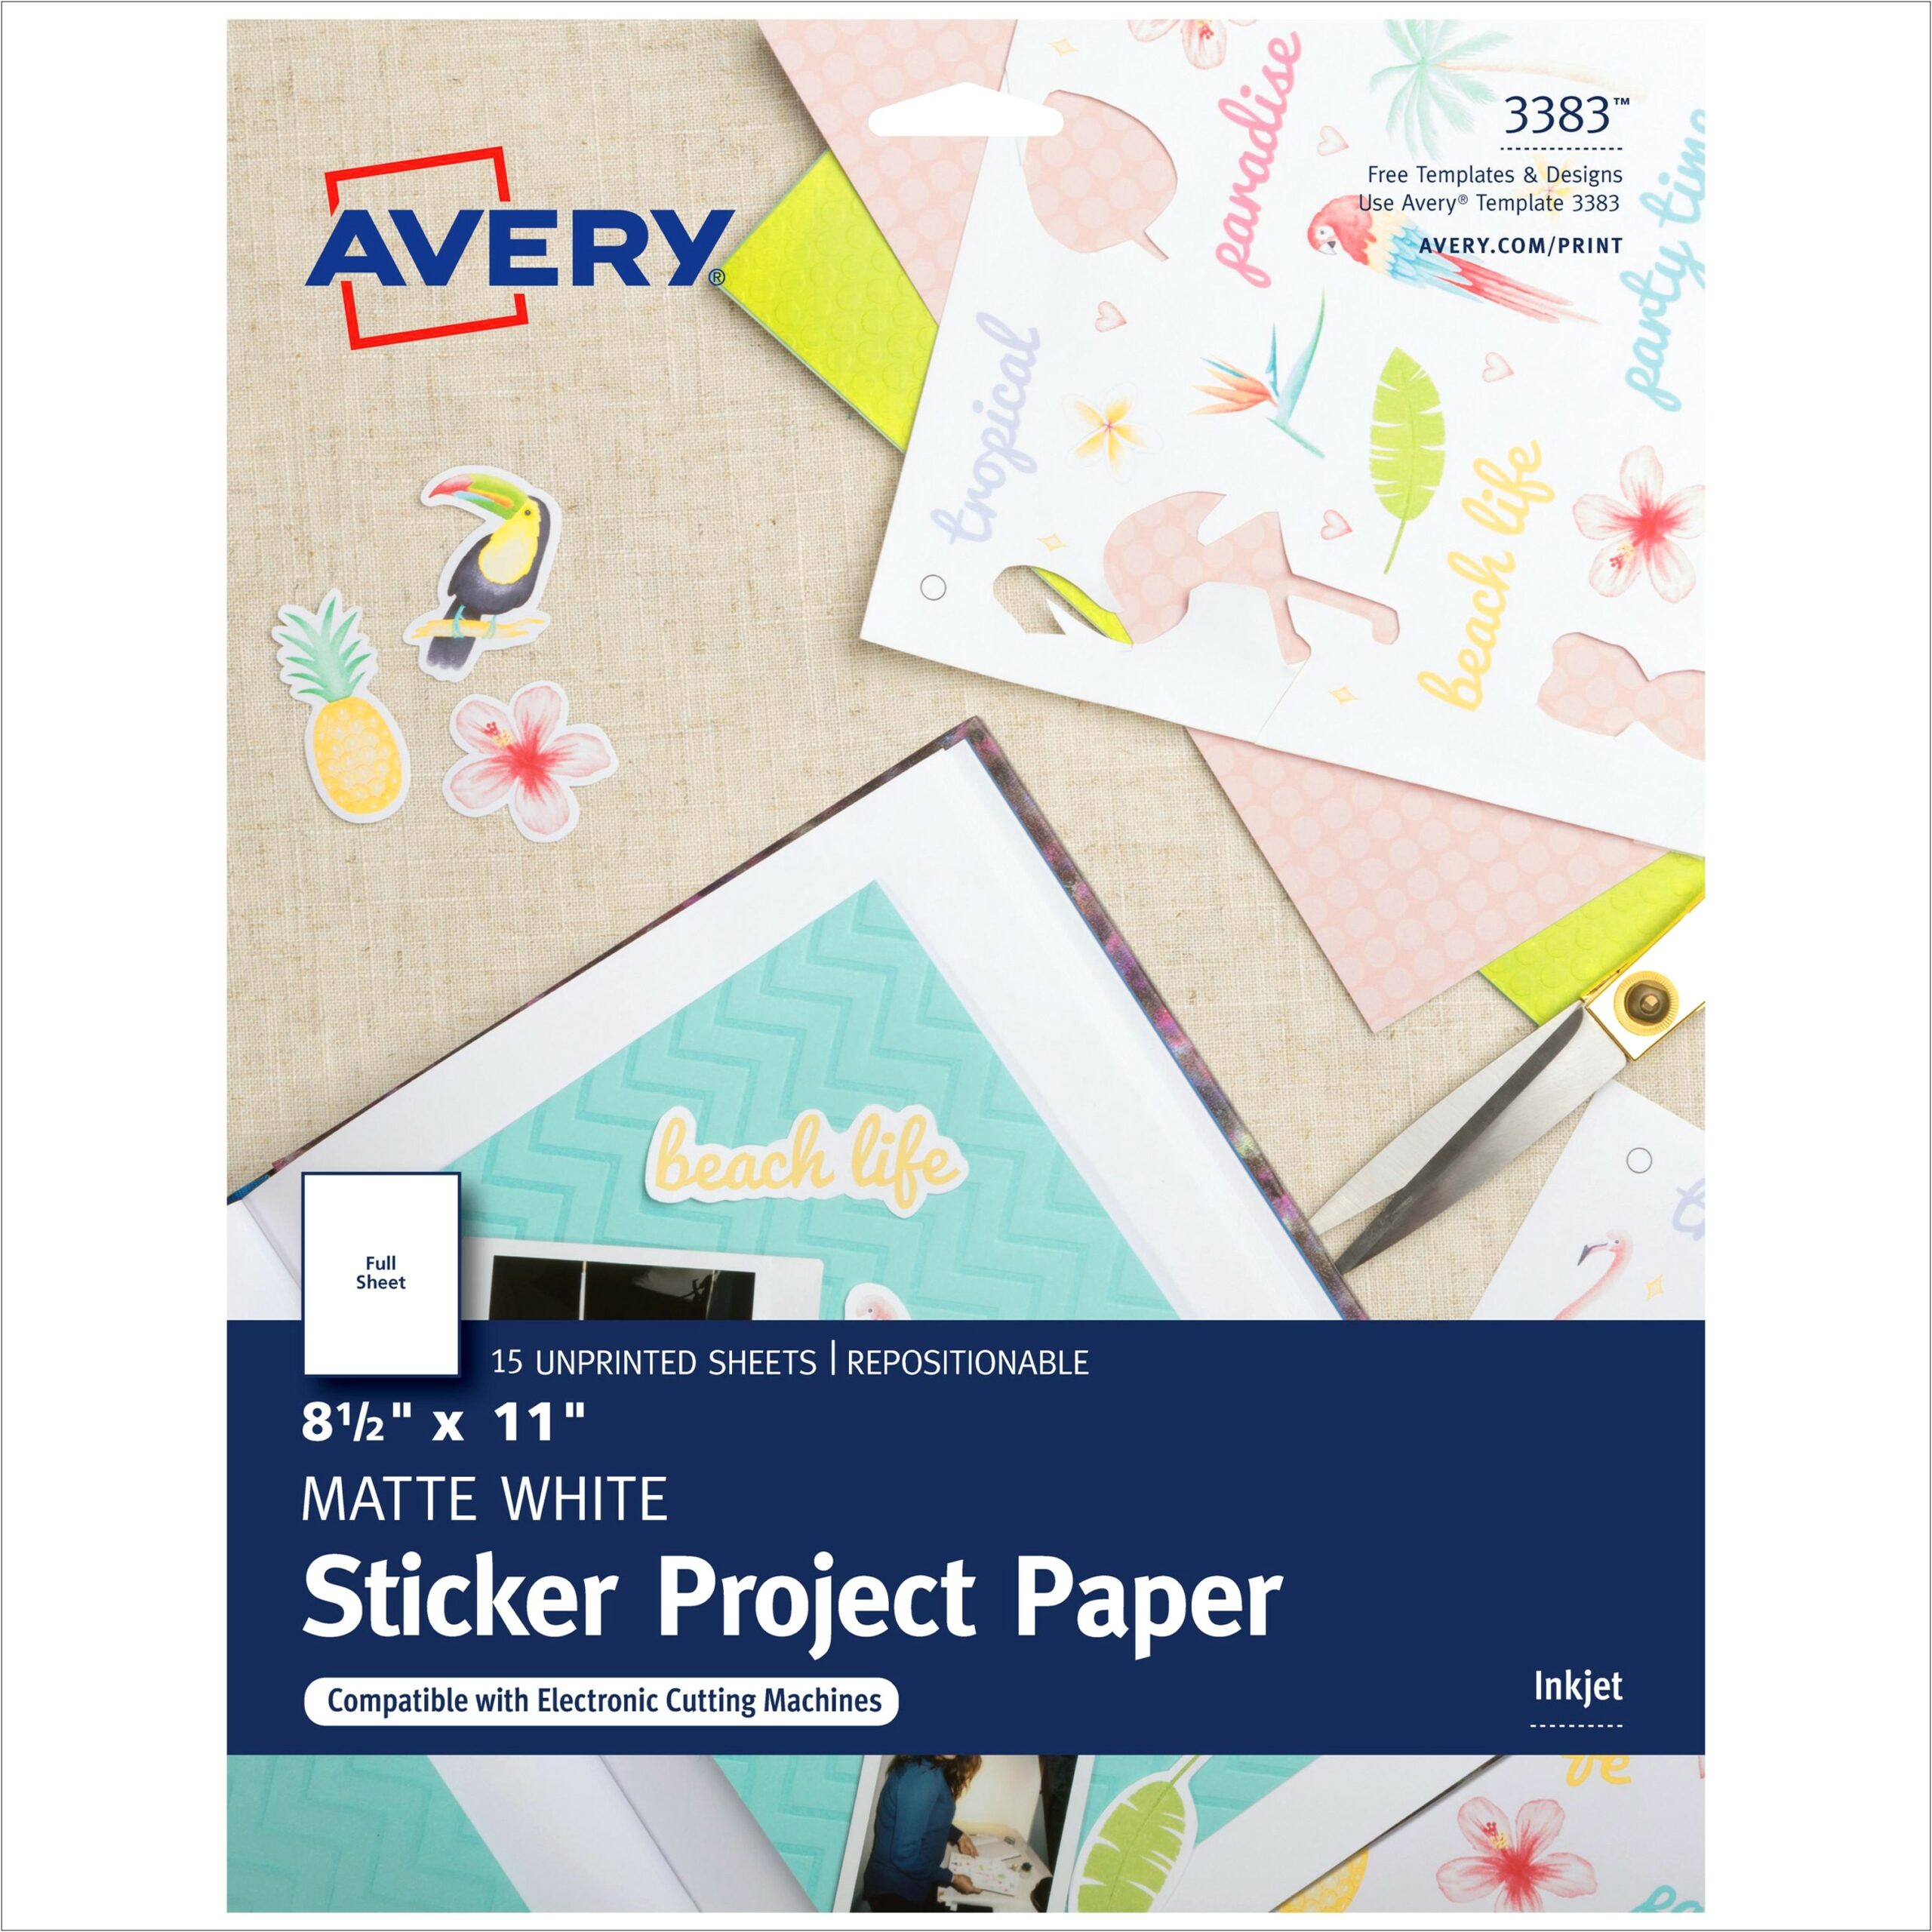 Astro Designs Sticker Paper Free Templates